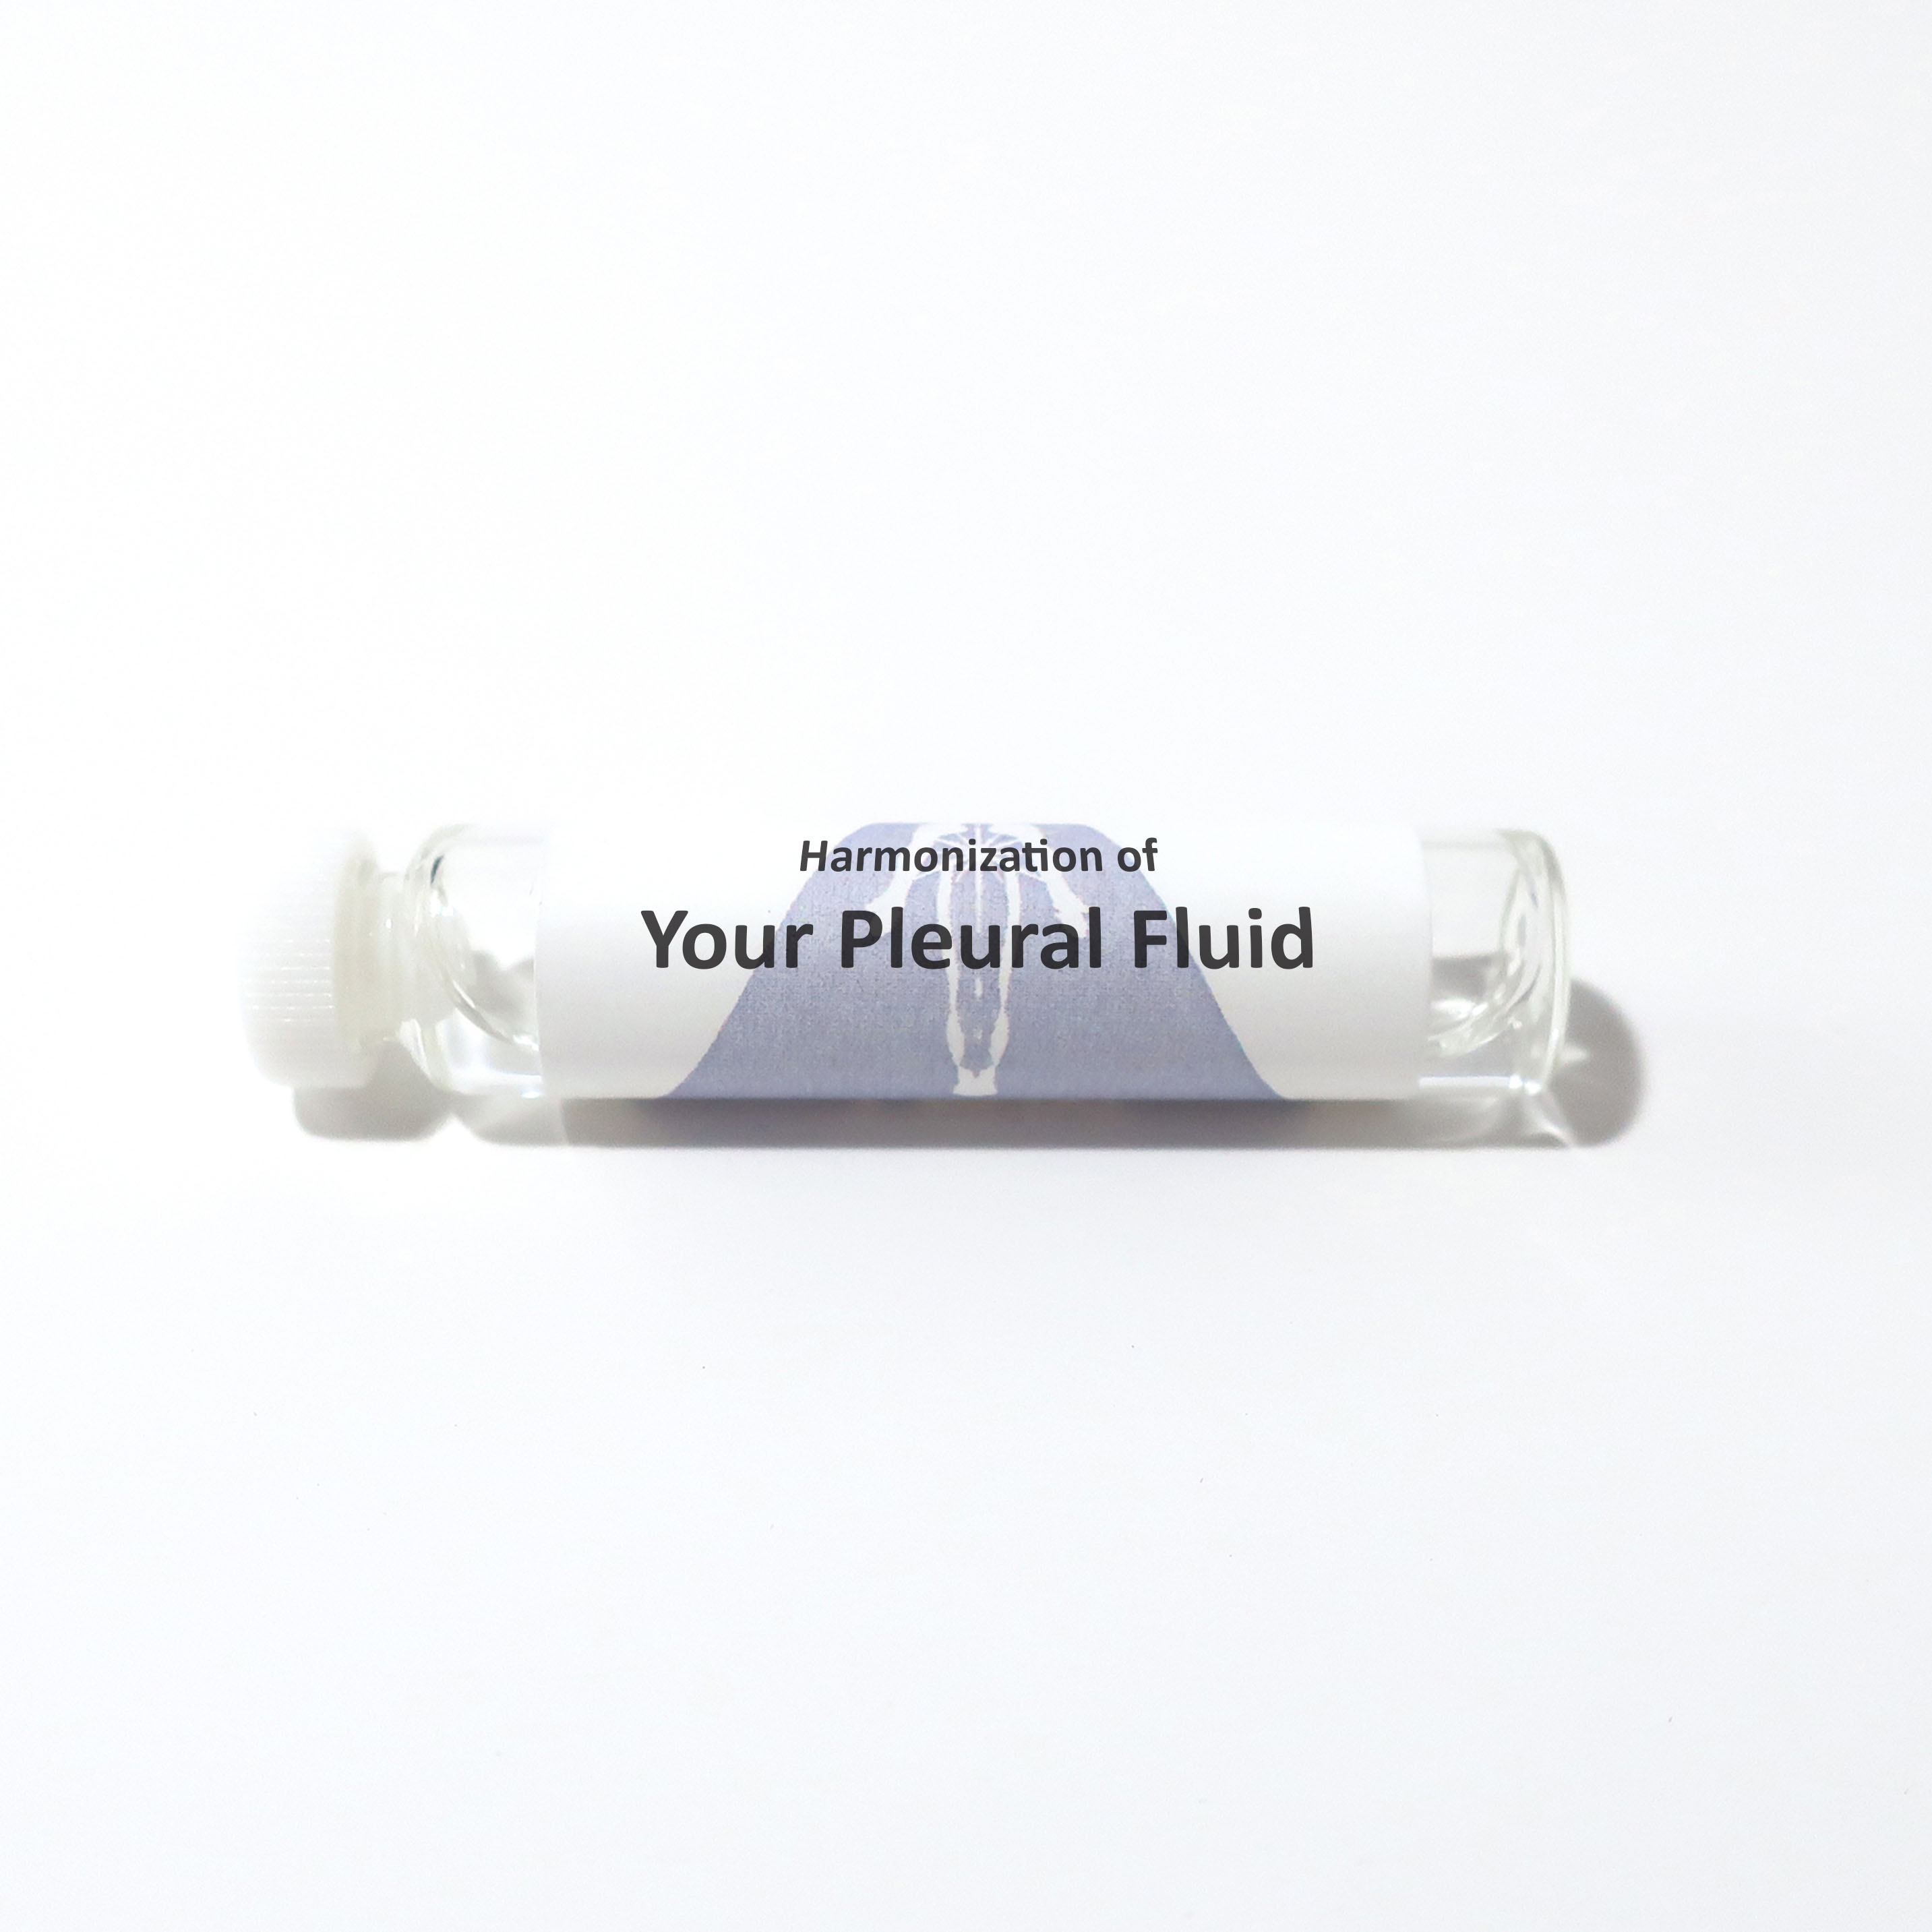 Your Pleural Fluid